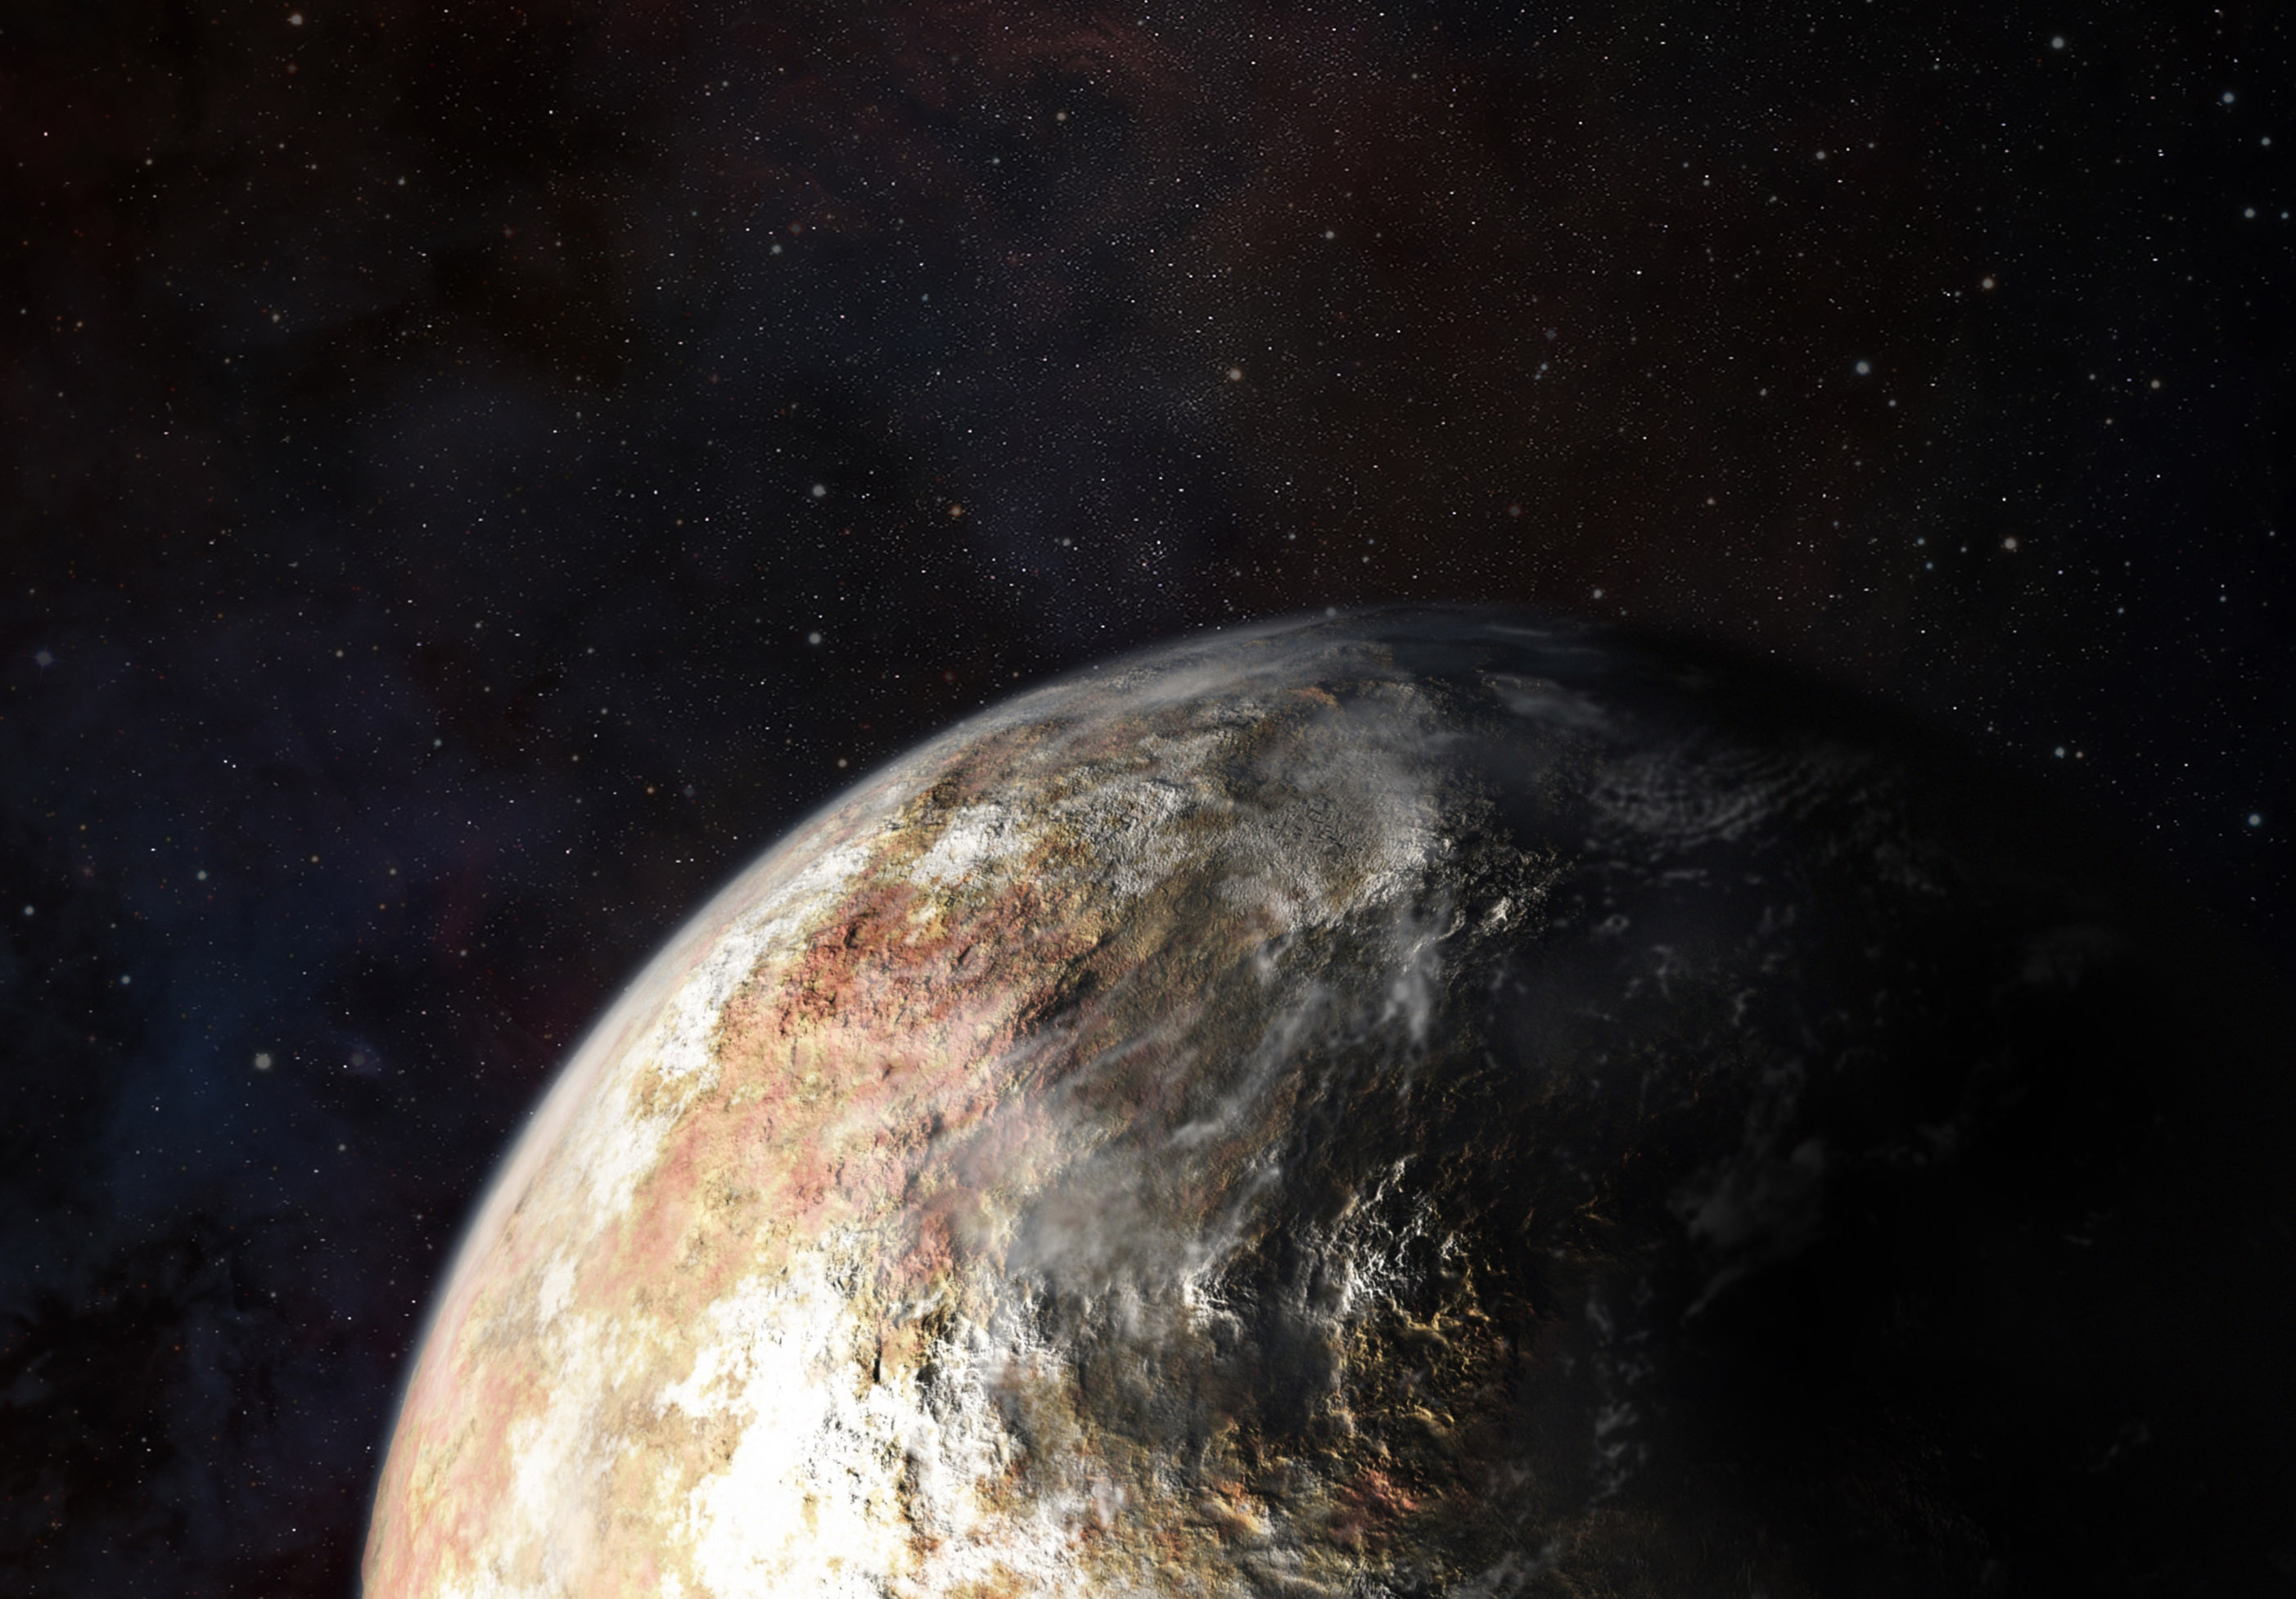 La réalité sera-t-elle à la hauteur de cette vision d'artiste de Pluton ? Il faudra peut-être attendre 2016 pour en être sûr car la sonde New Horizons mettra du temps pour transmettre toutes les données qu'elle va collecter le 14 juillet 2015. On devrait tout de même disposer de belles images de Pluton et Charon rapidement après cette date. On y cherchera des nuages qui pourront trahir certaines des caractéristiques des vents dans l'atmosphère de cette planète naine bien plus ténue que celle de la Terre. © JHUAPL